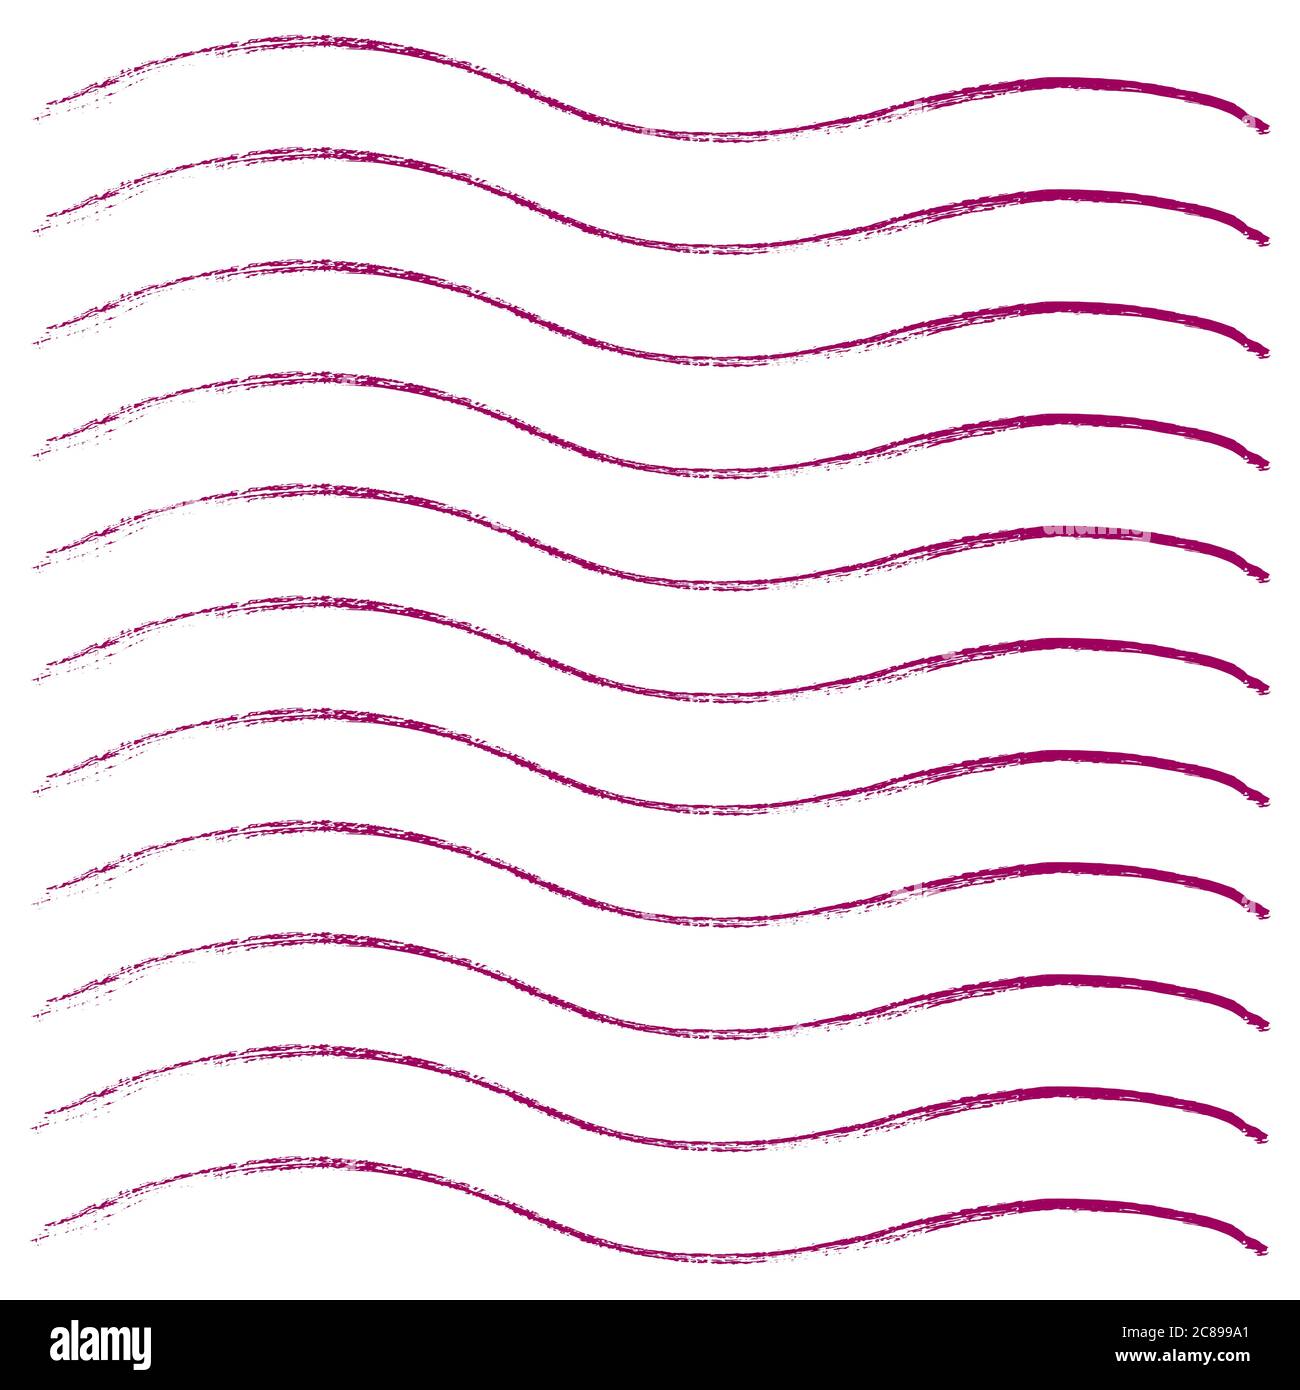 Ink pink grunge stripes set. Vector illustration. Stock Vector